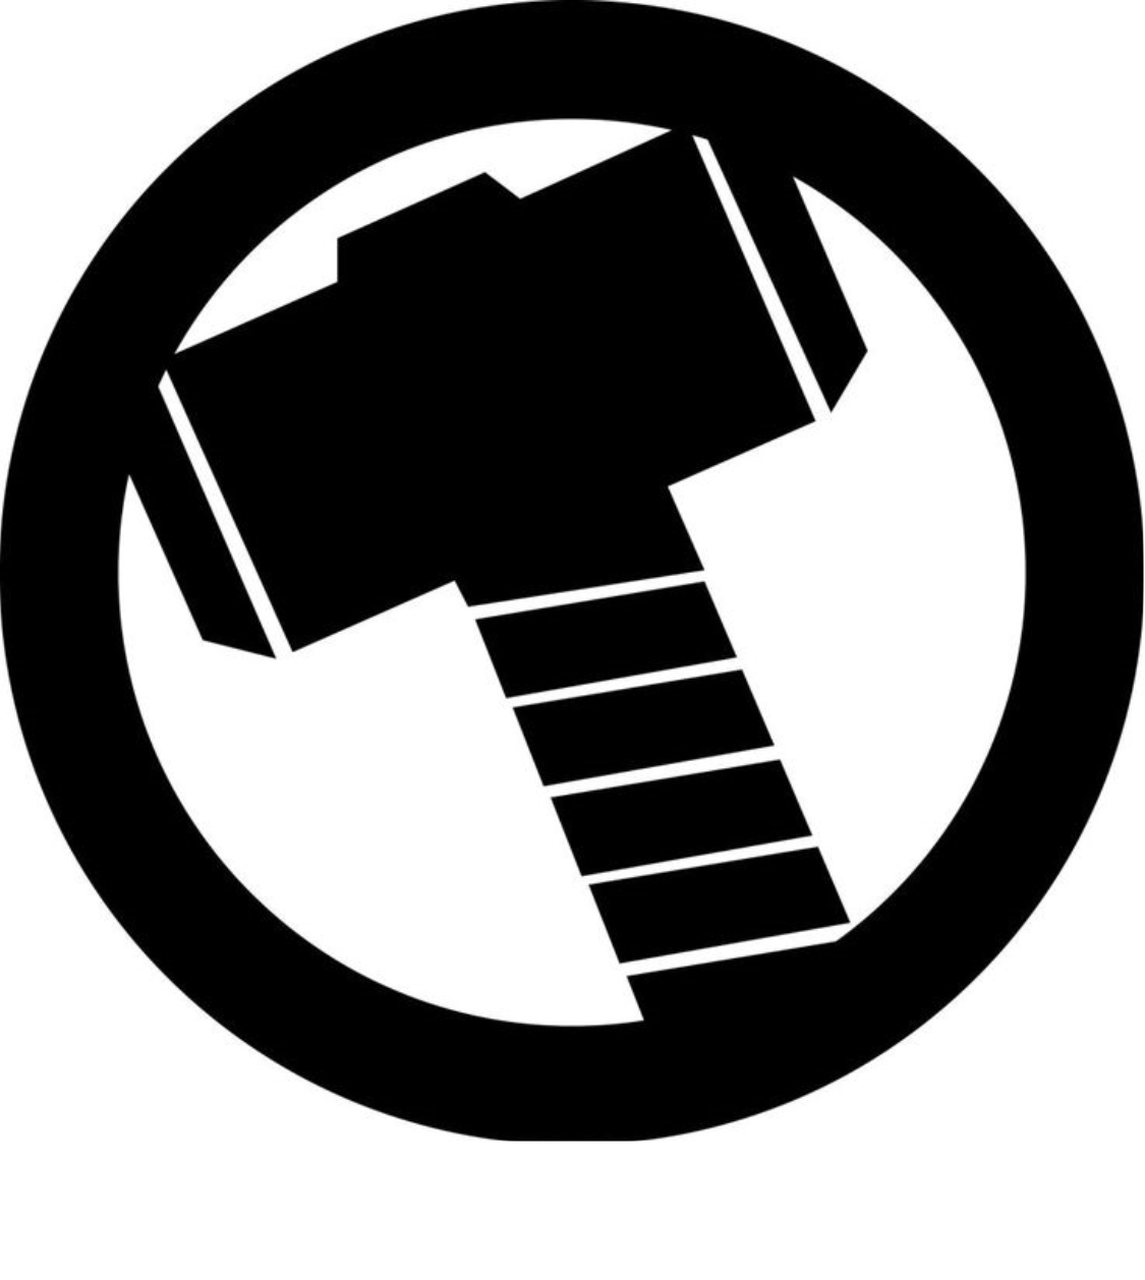 Avengers Marvel Comics Thor Hammer Logo.